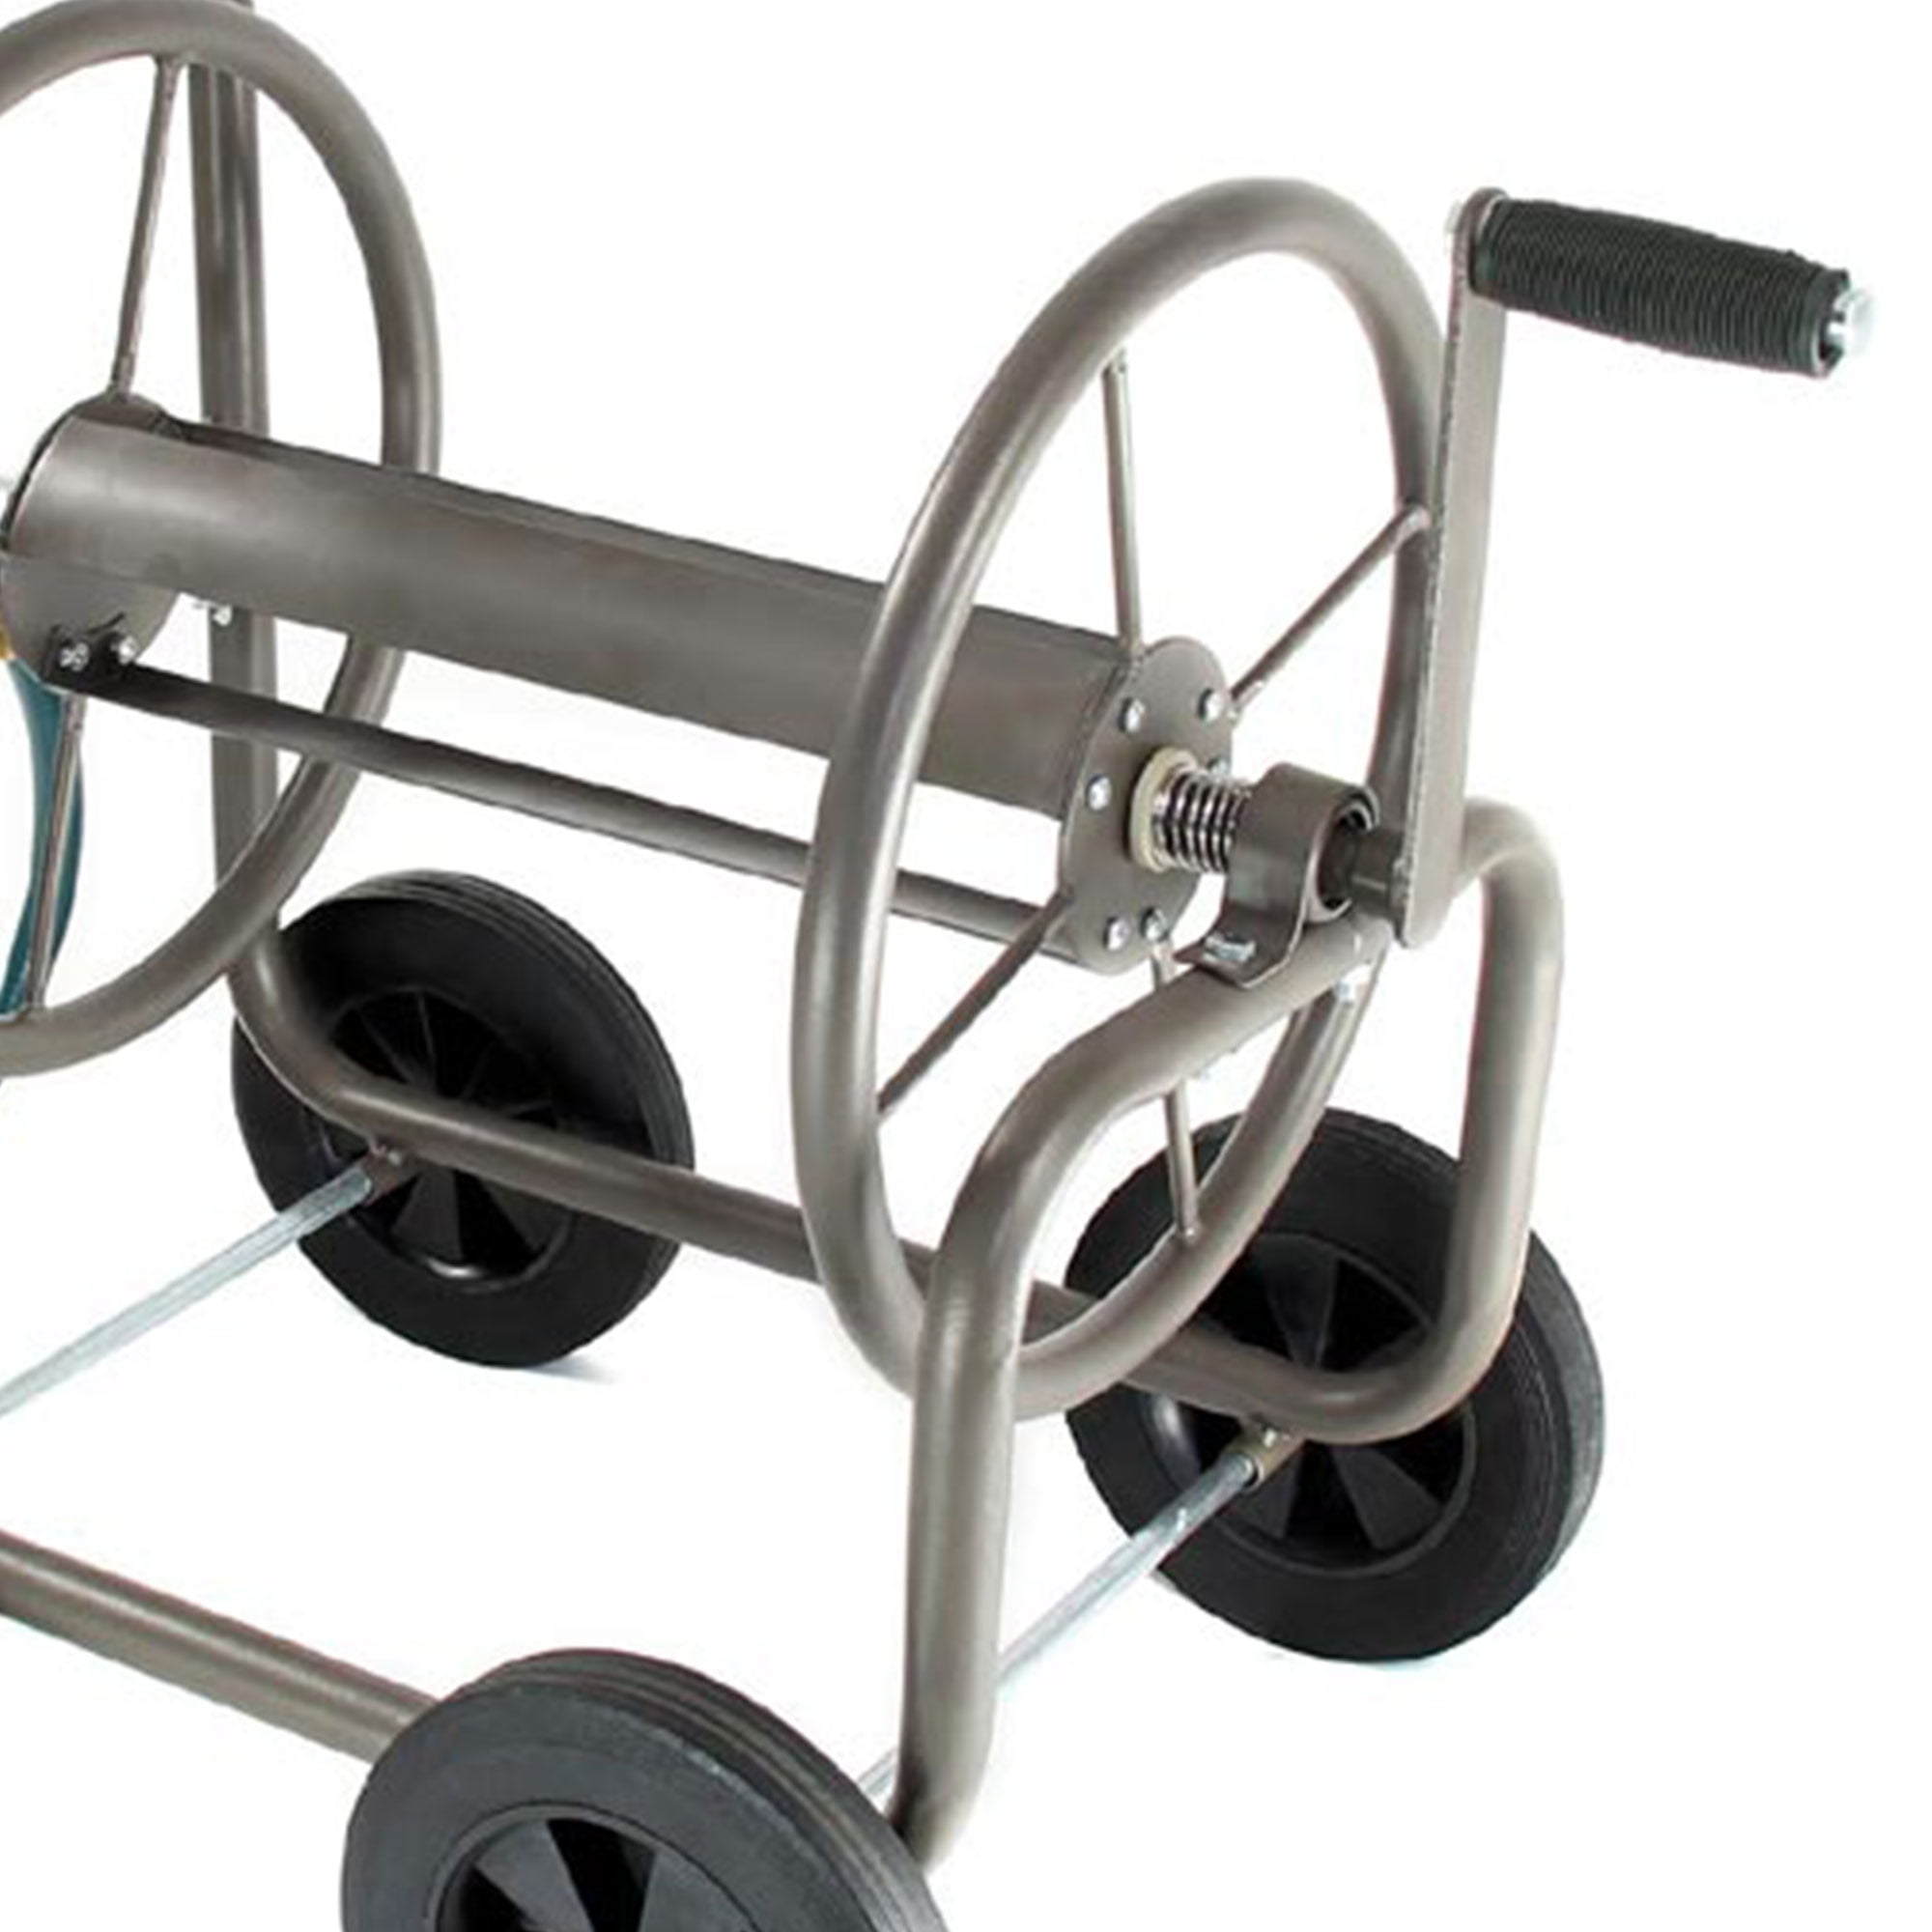 Heavy Duty Garden Hose 200 ft Metal Reel Cart 4 Wheels Resistant Steel  Storage Water Rolling Caddy Basket Mobile & ebook : Patio, Lawn & Garden 